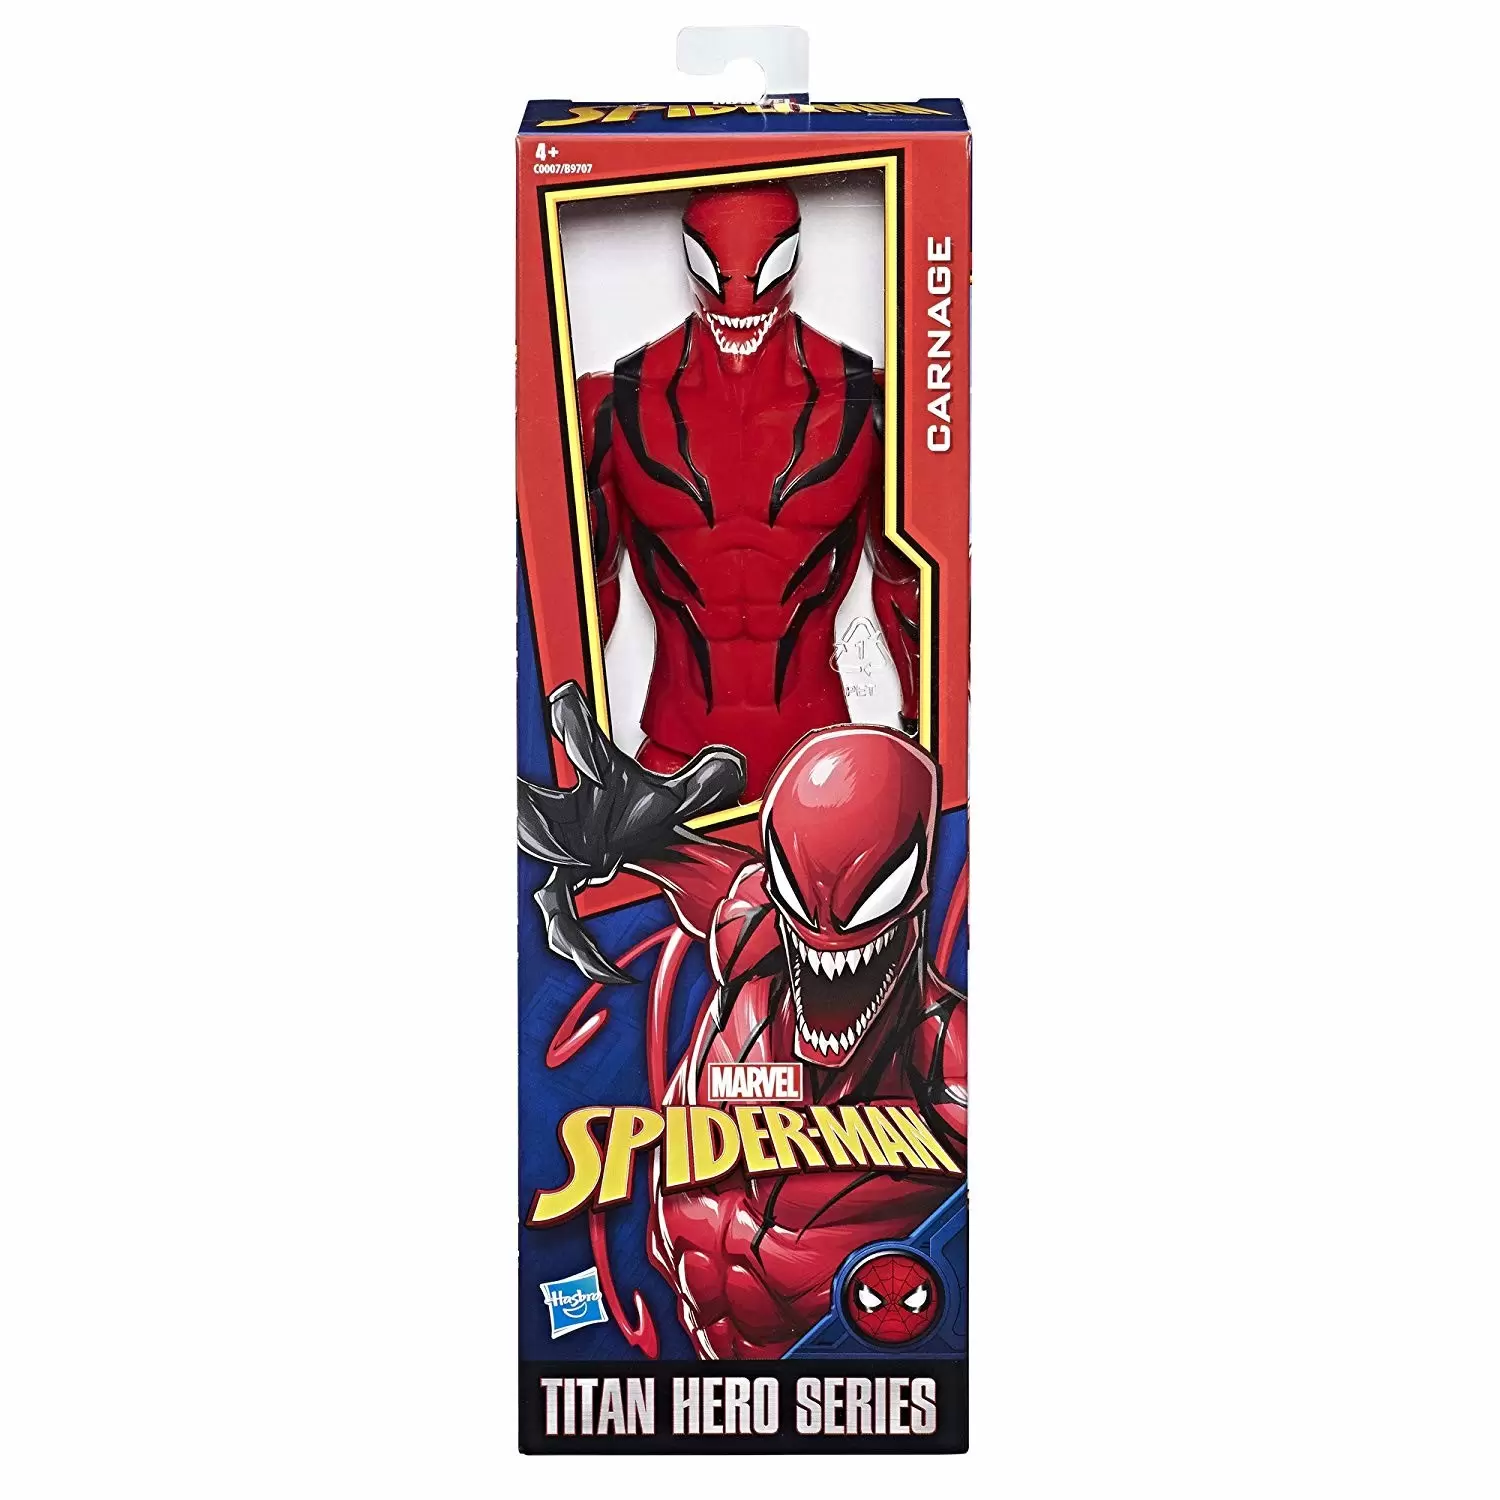 Titan Hero Series - Spider-Man - Carnage